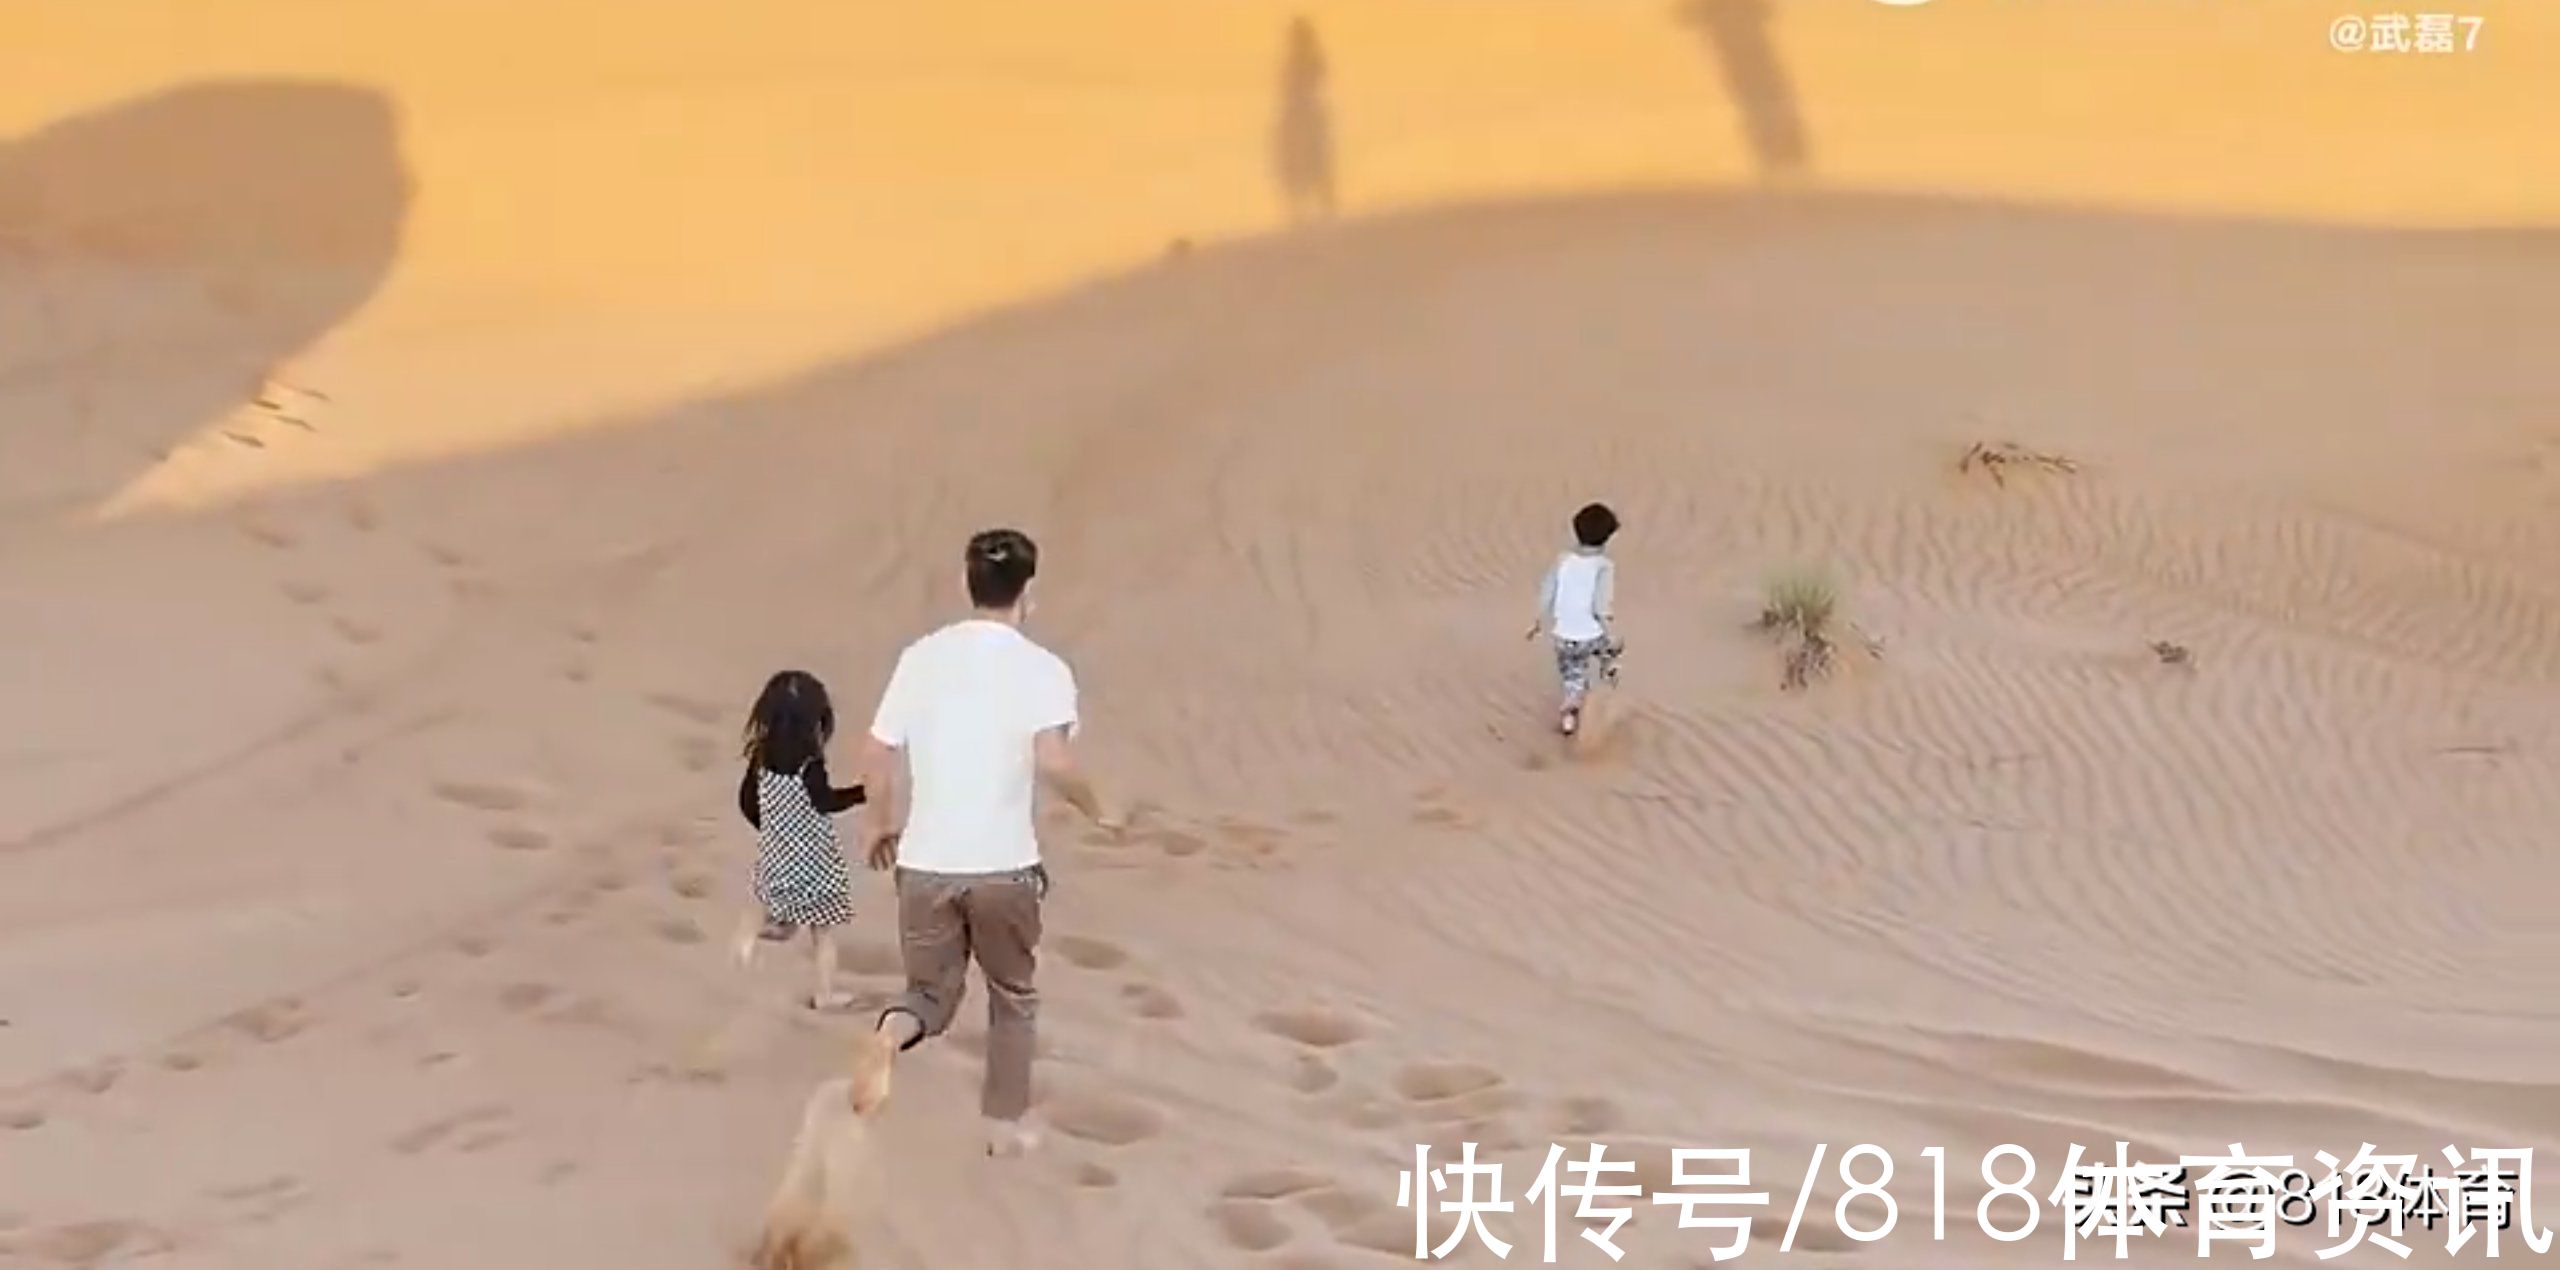 阿联酋|享受人生!武磊携漂亮妻子阿联酋度假,一双儿女头回见沙漠满地疯玩